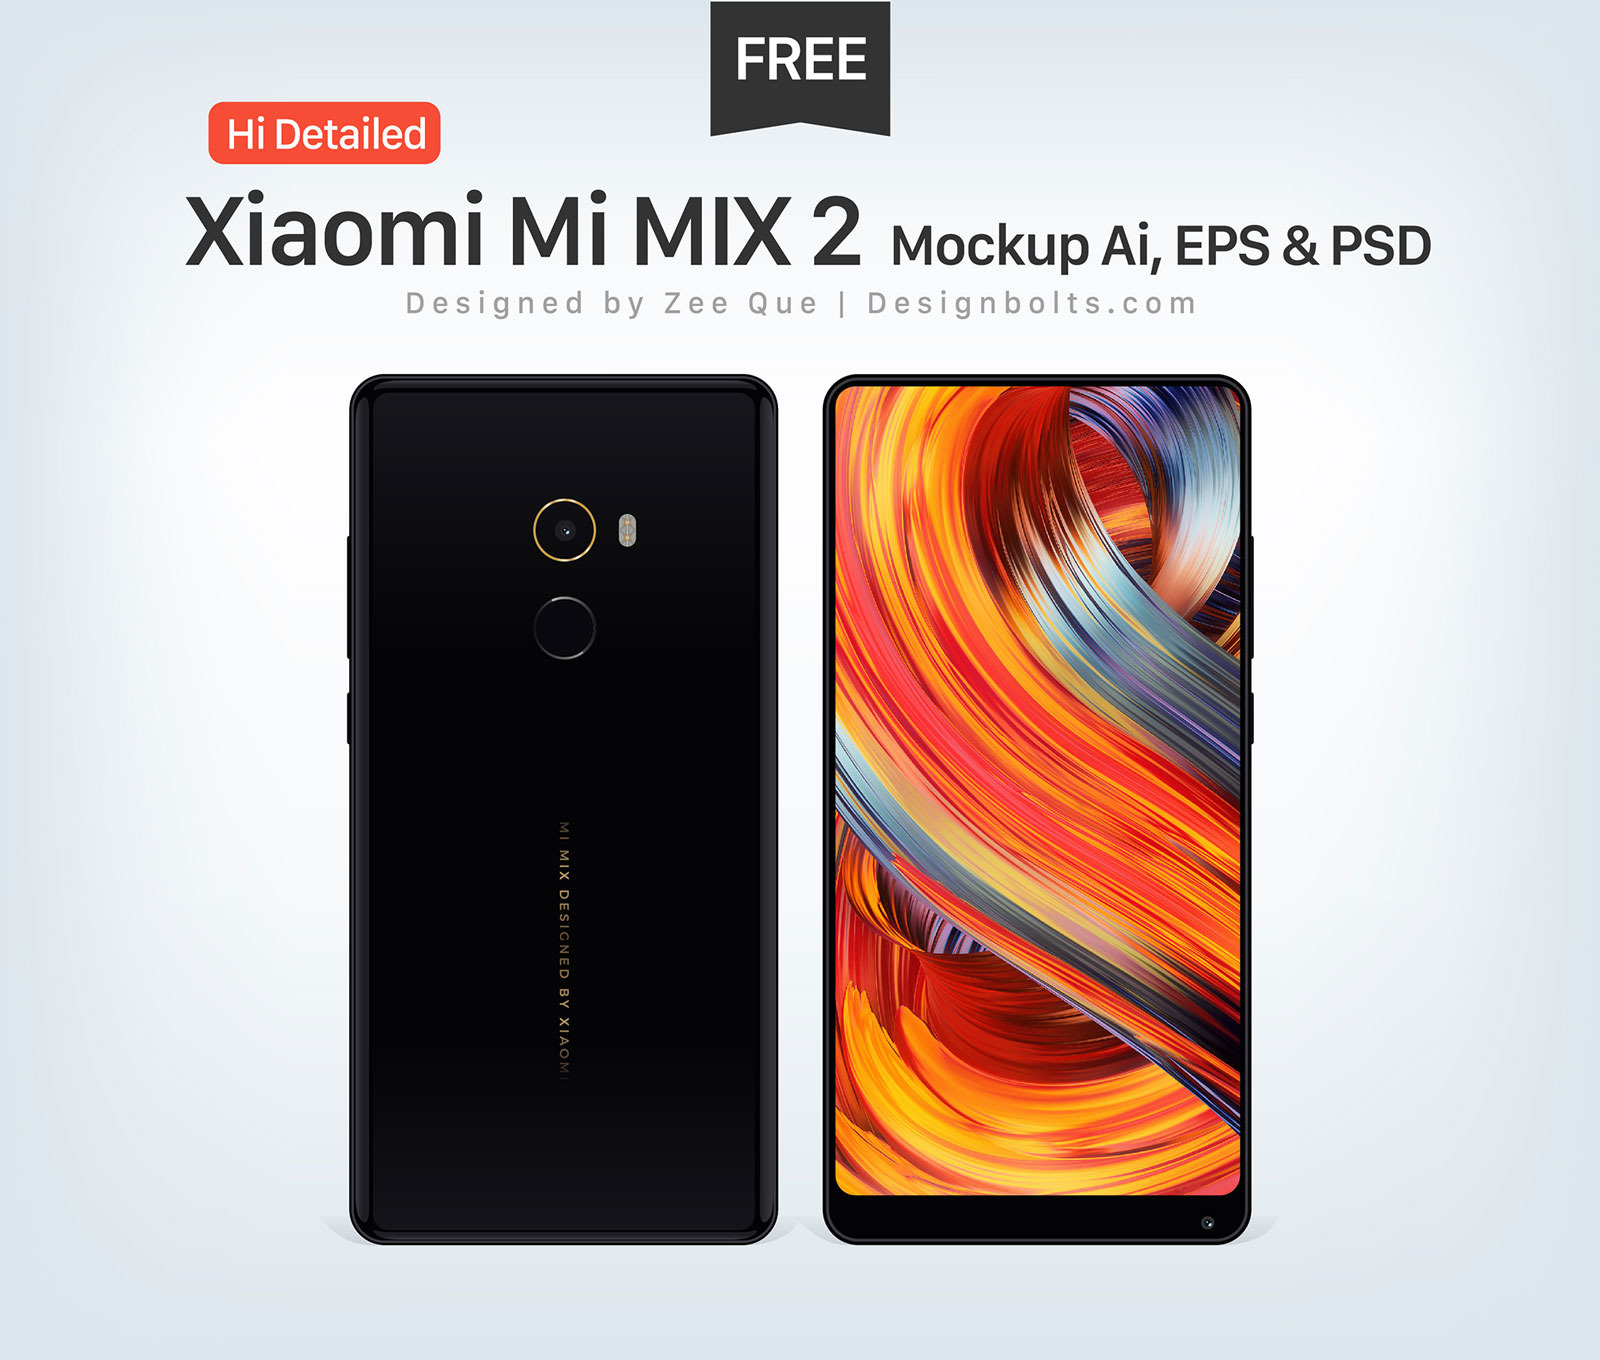 Free-Xiaomi-Mi-Mix-2-Mockup-Ai-01-01